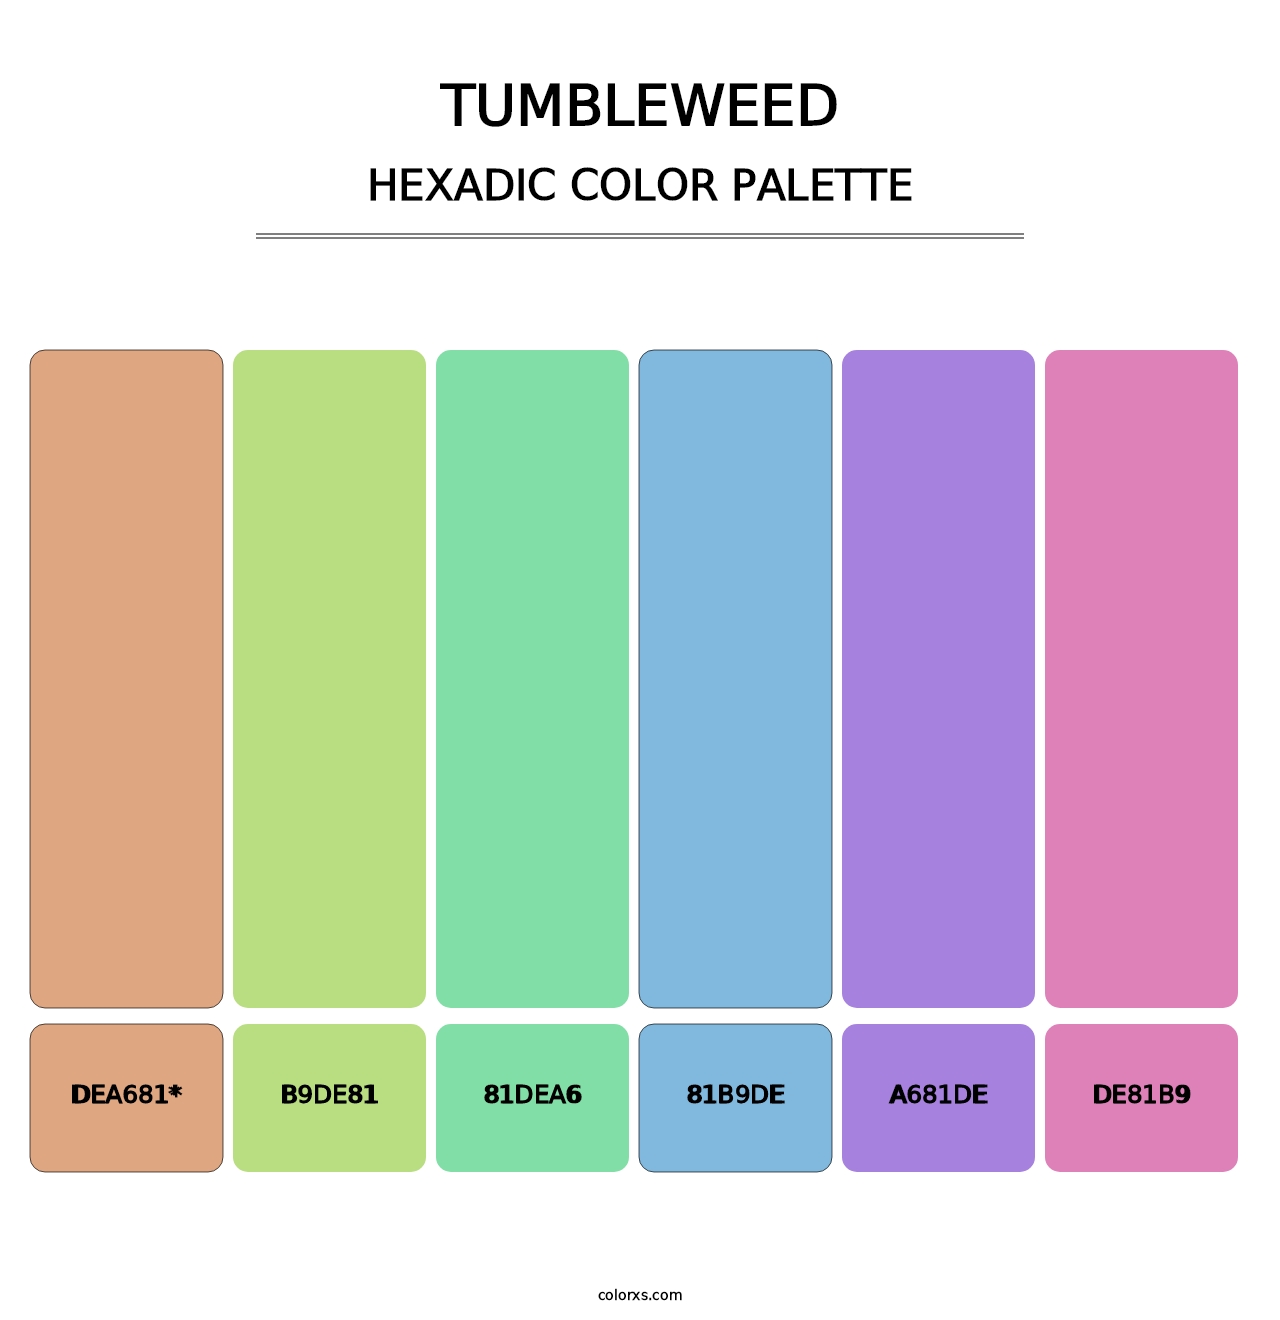 Tumbleweed - Hexadic Color Palette